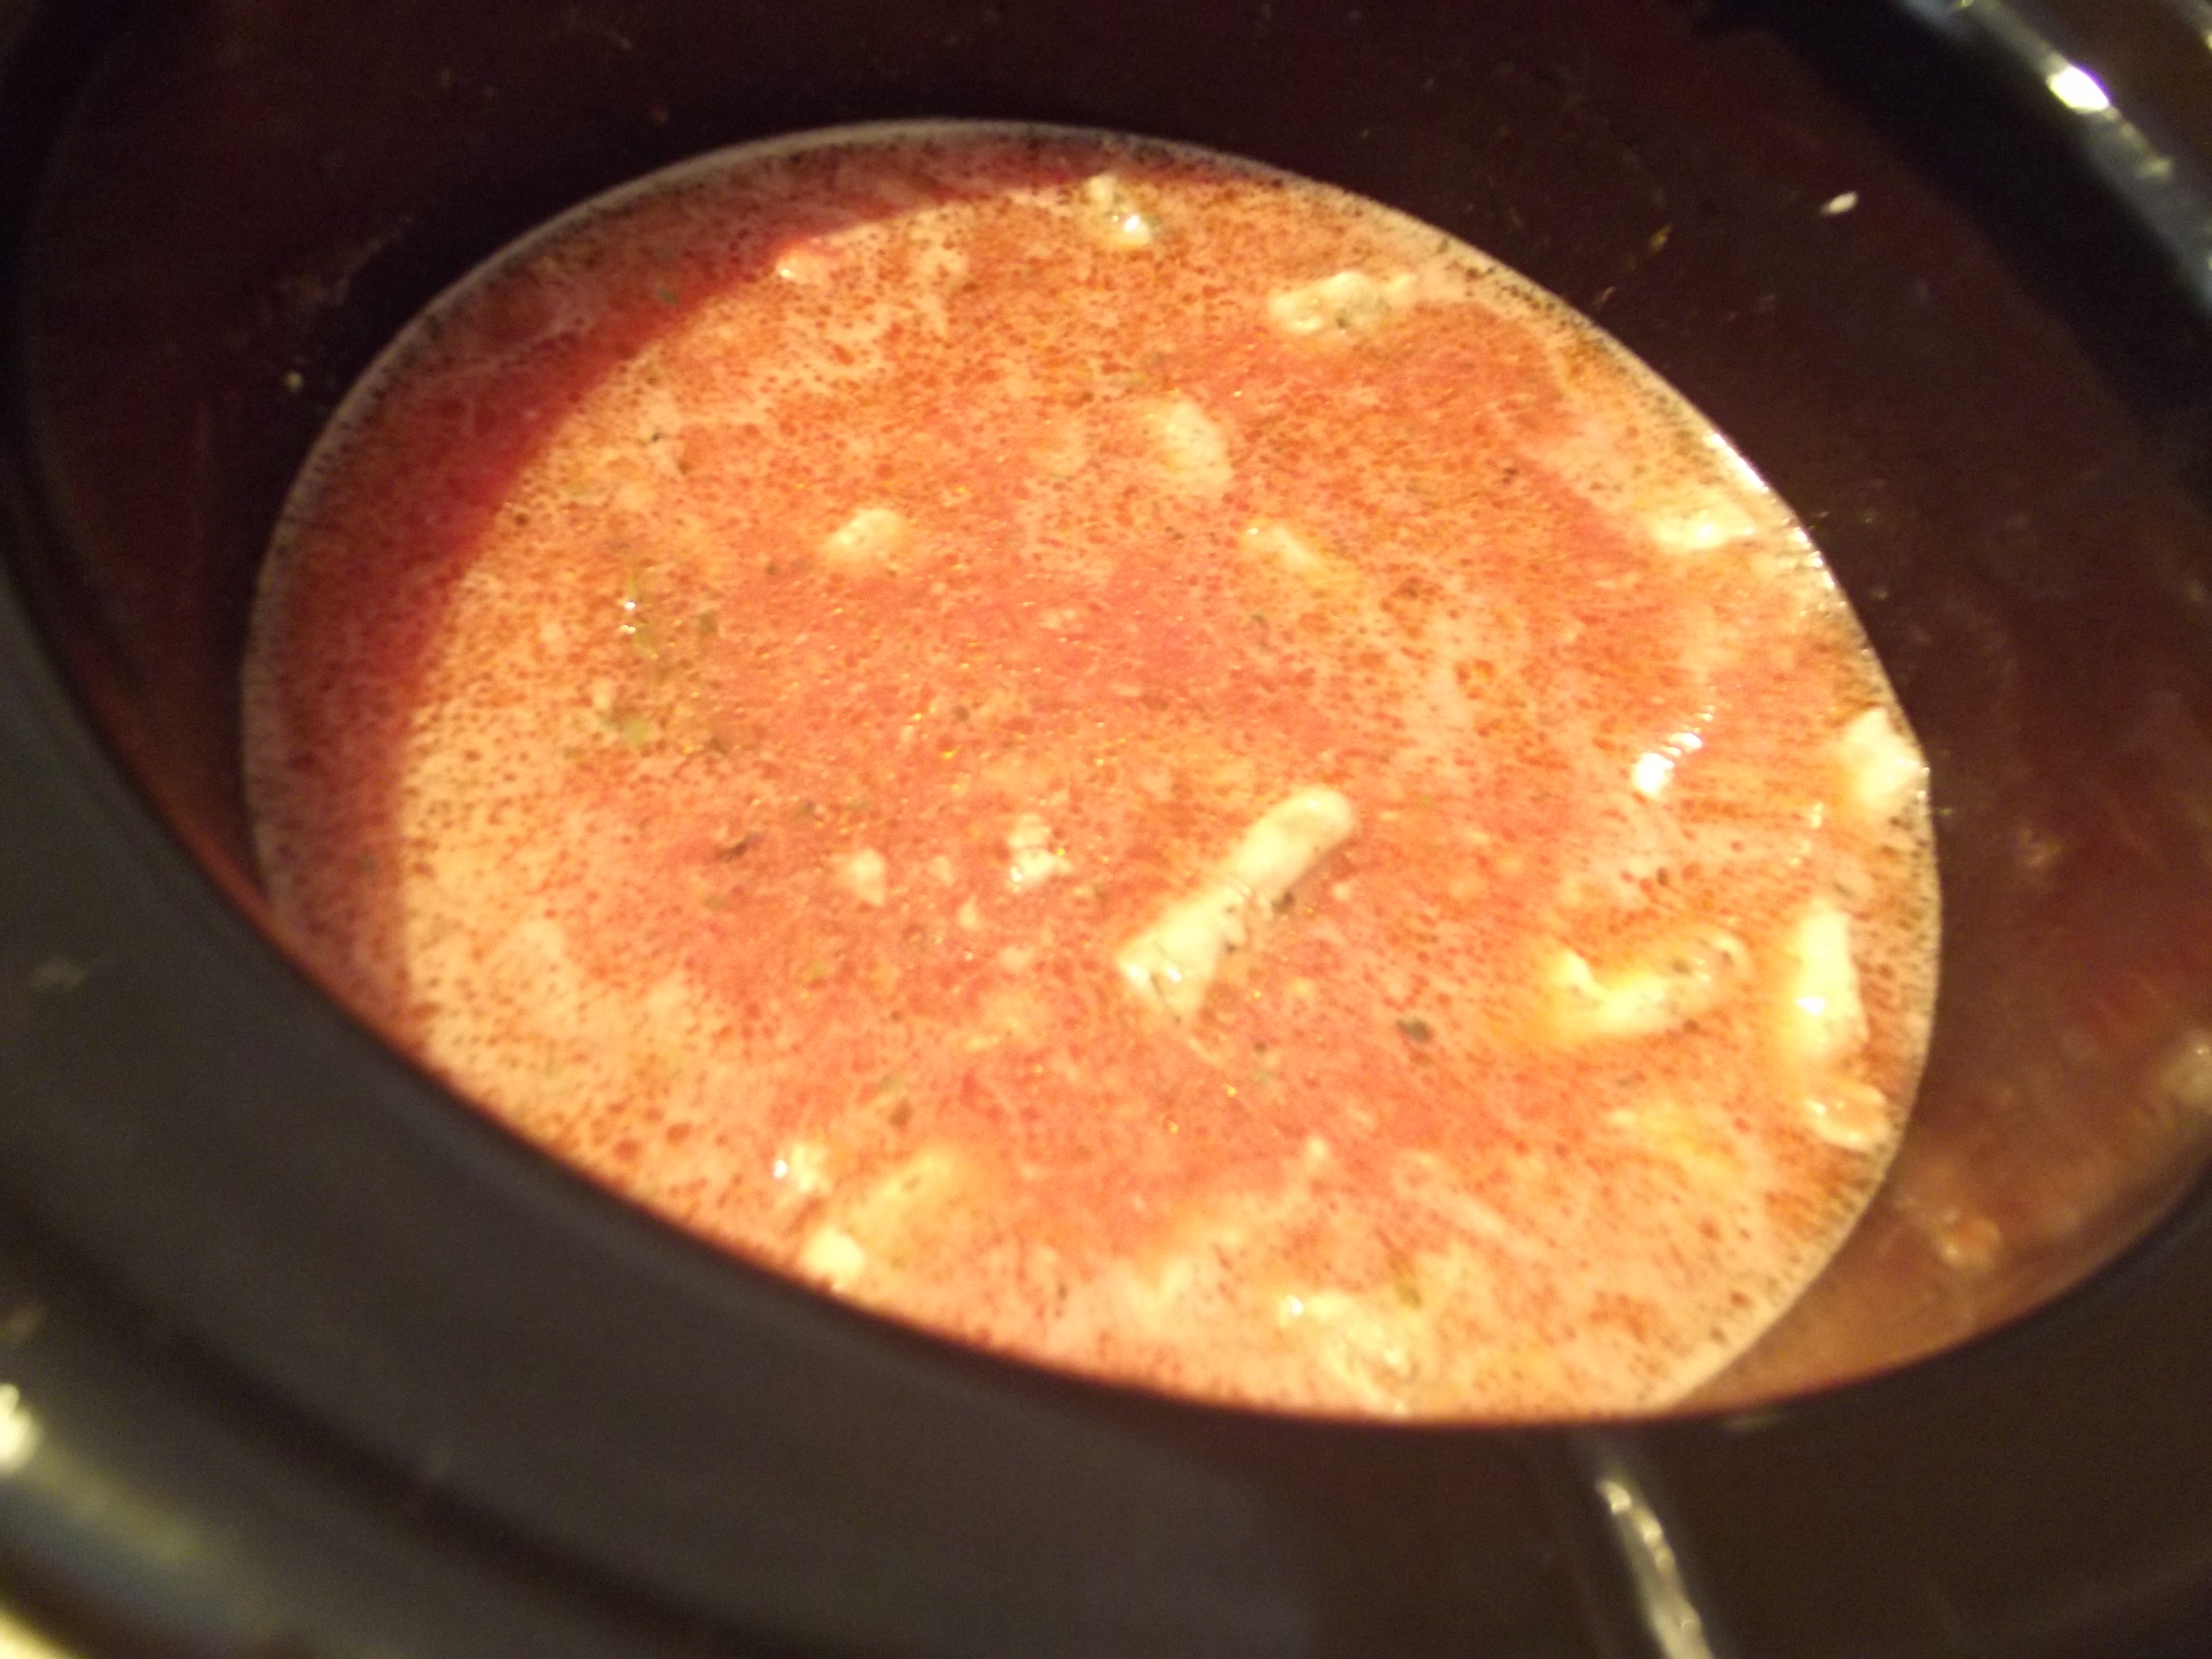 Muschi de porc in sos de rosii cu usturoi la slow cooker Crock-Pot 4,7 L